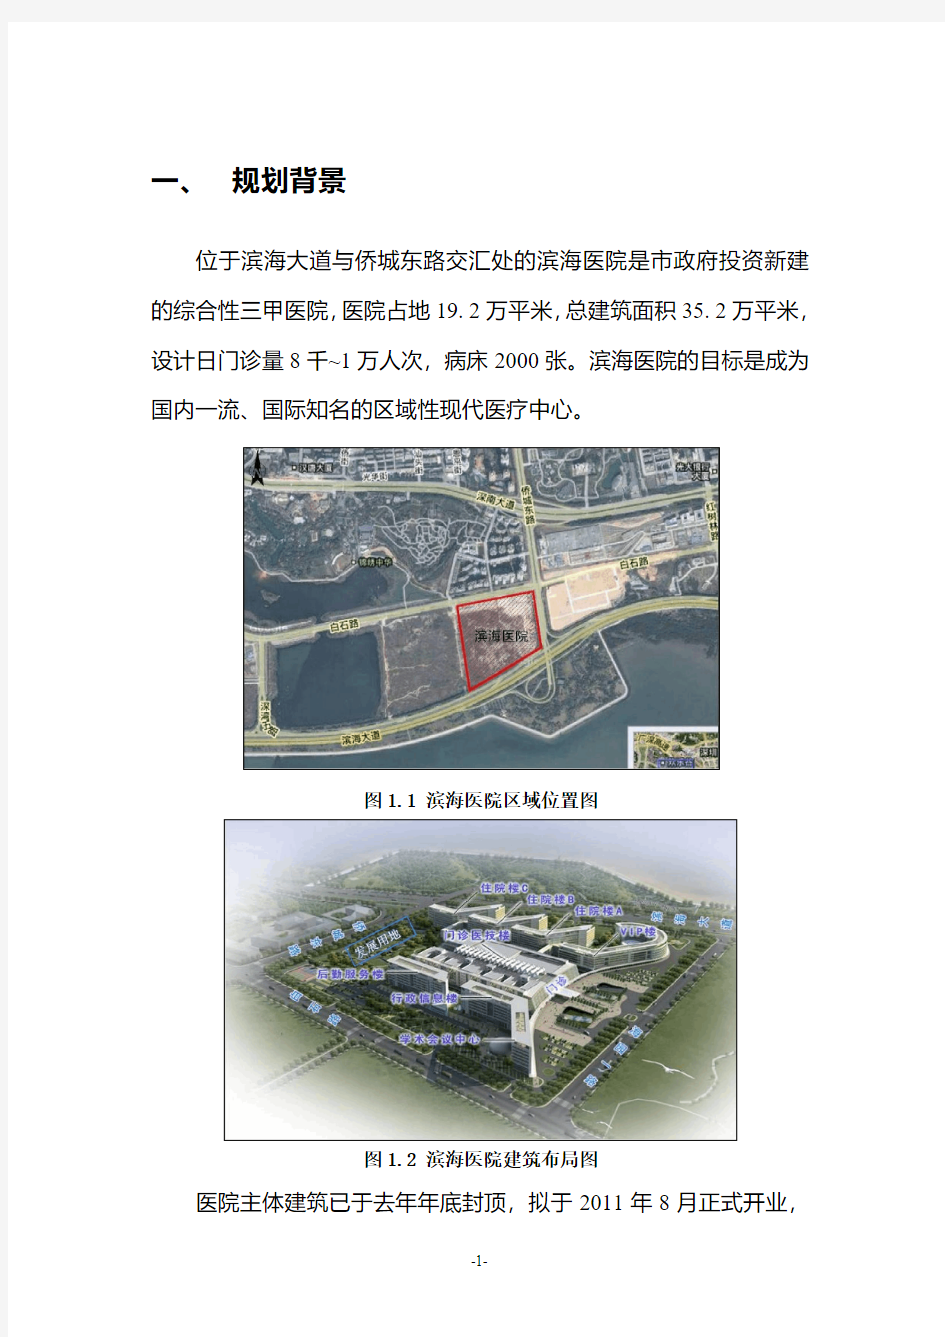 深圳市滨海医院新新及周边地区交通规划方案(征求意见稿)